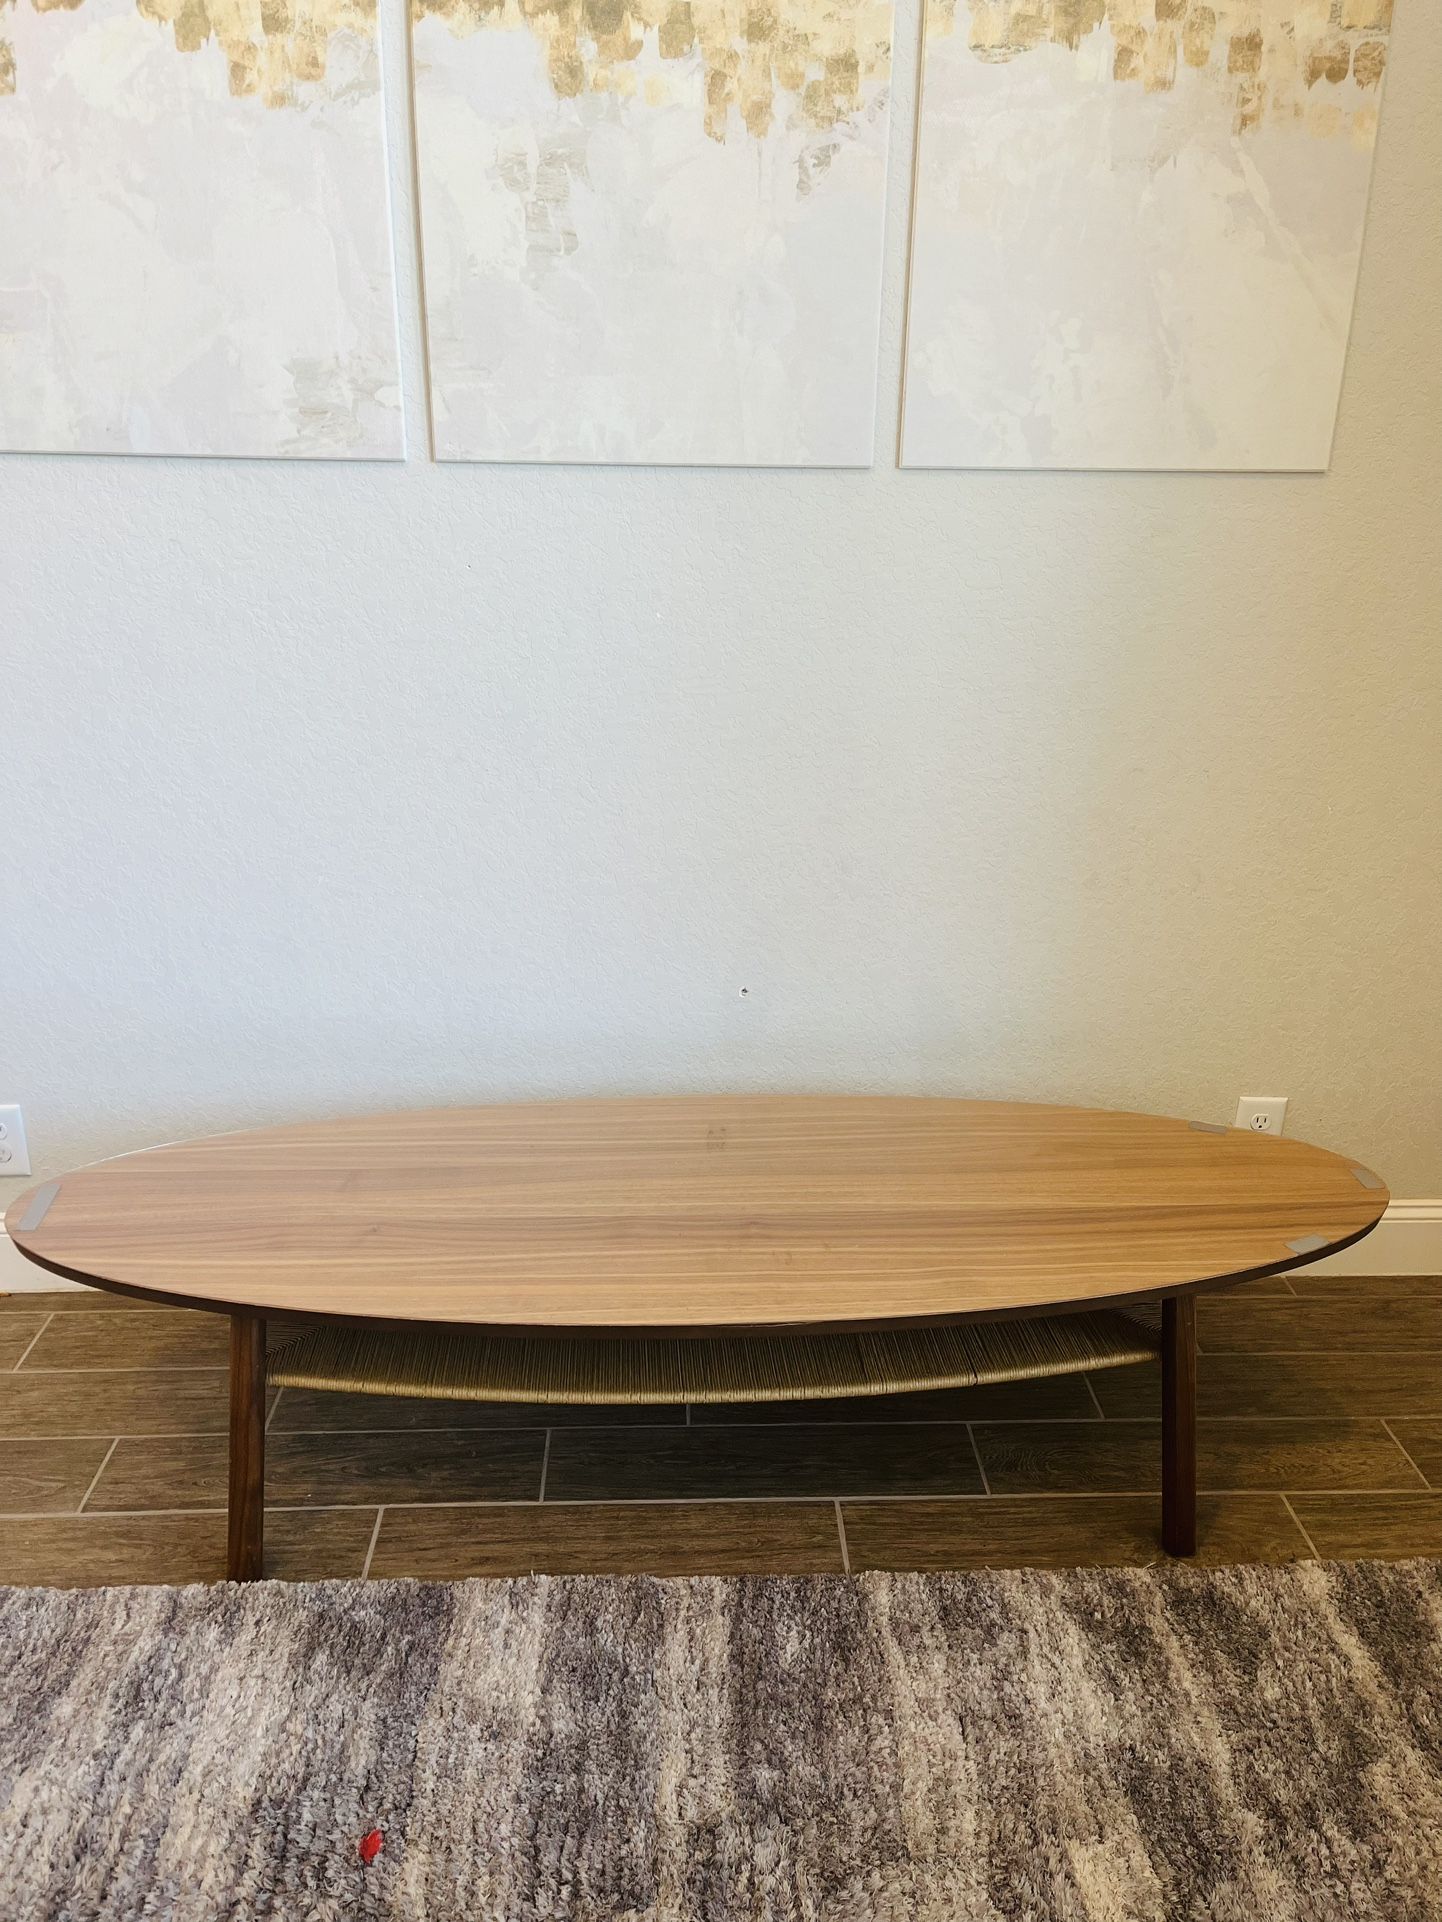 Coffee table, walnut veneer, 70 7/8x23 1/4 "